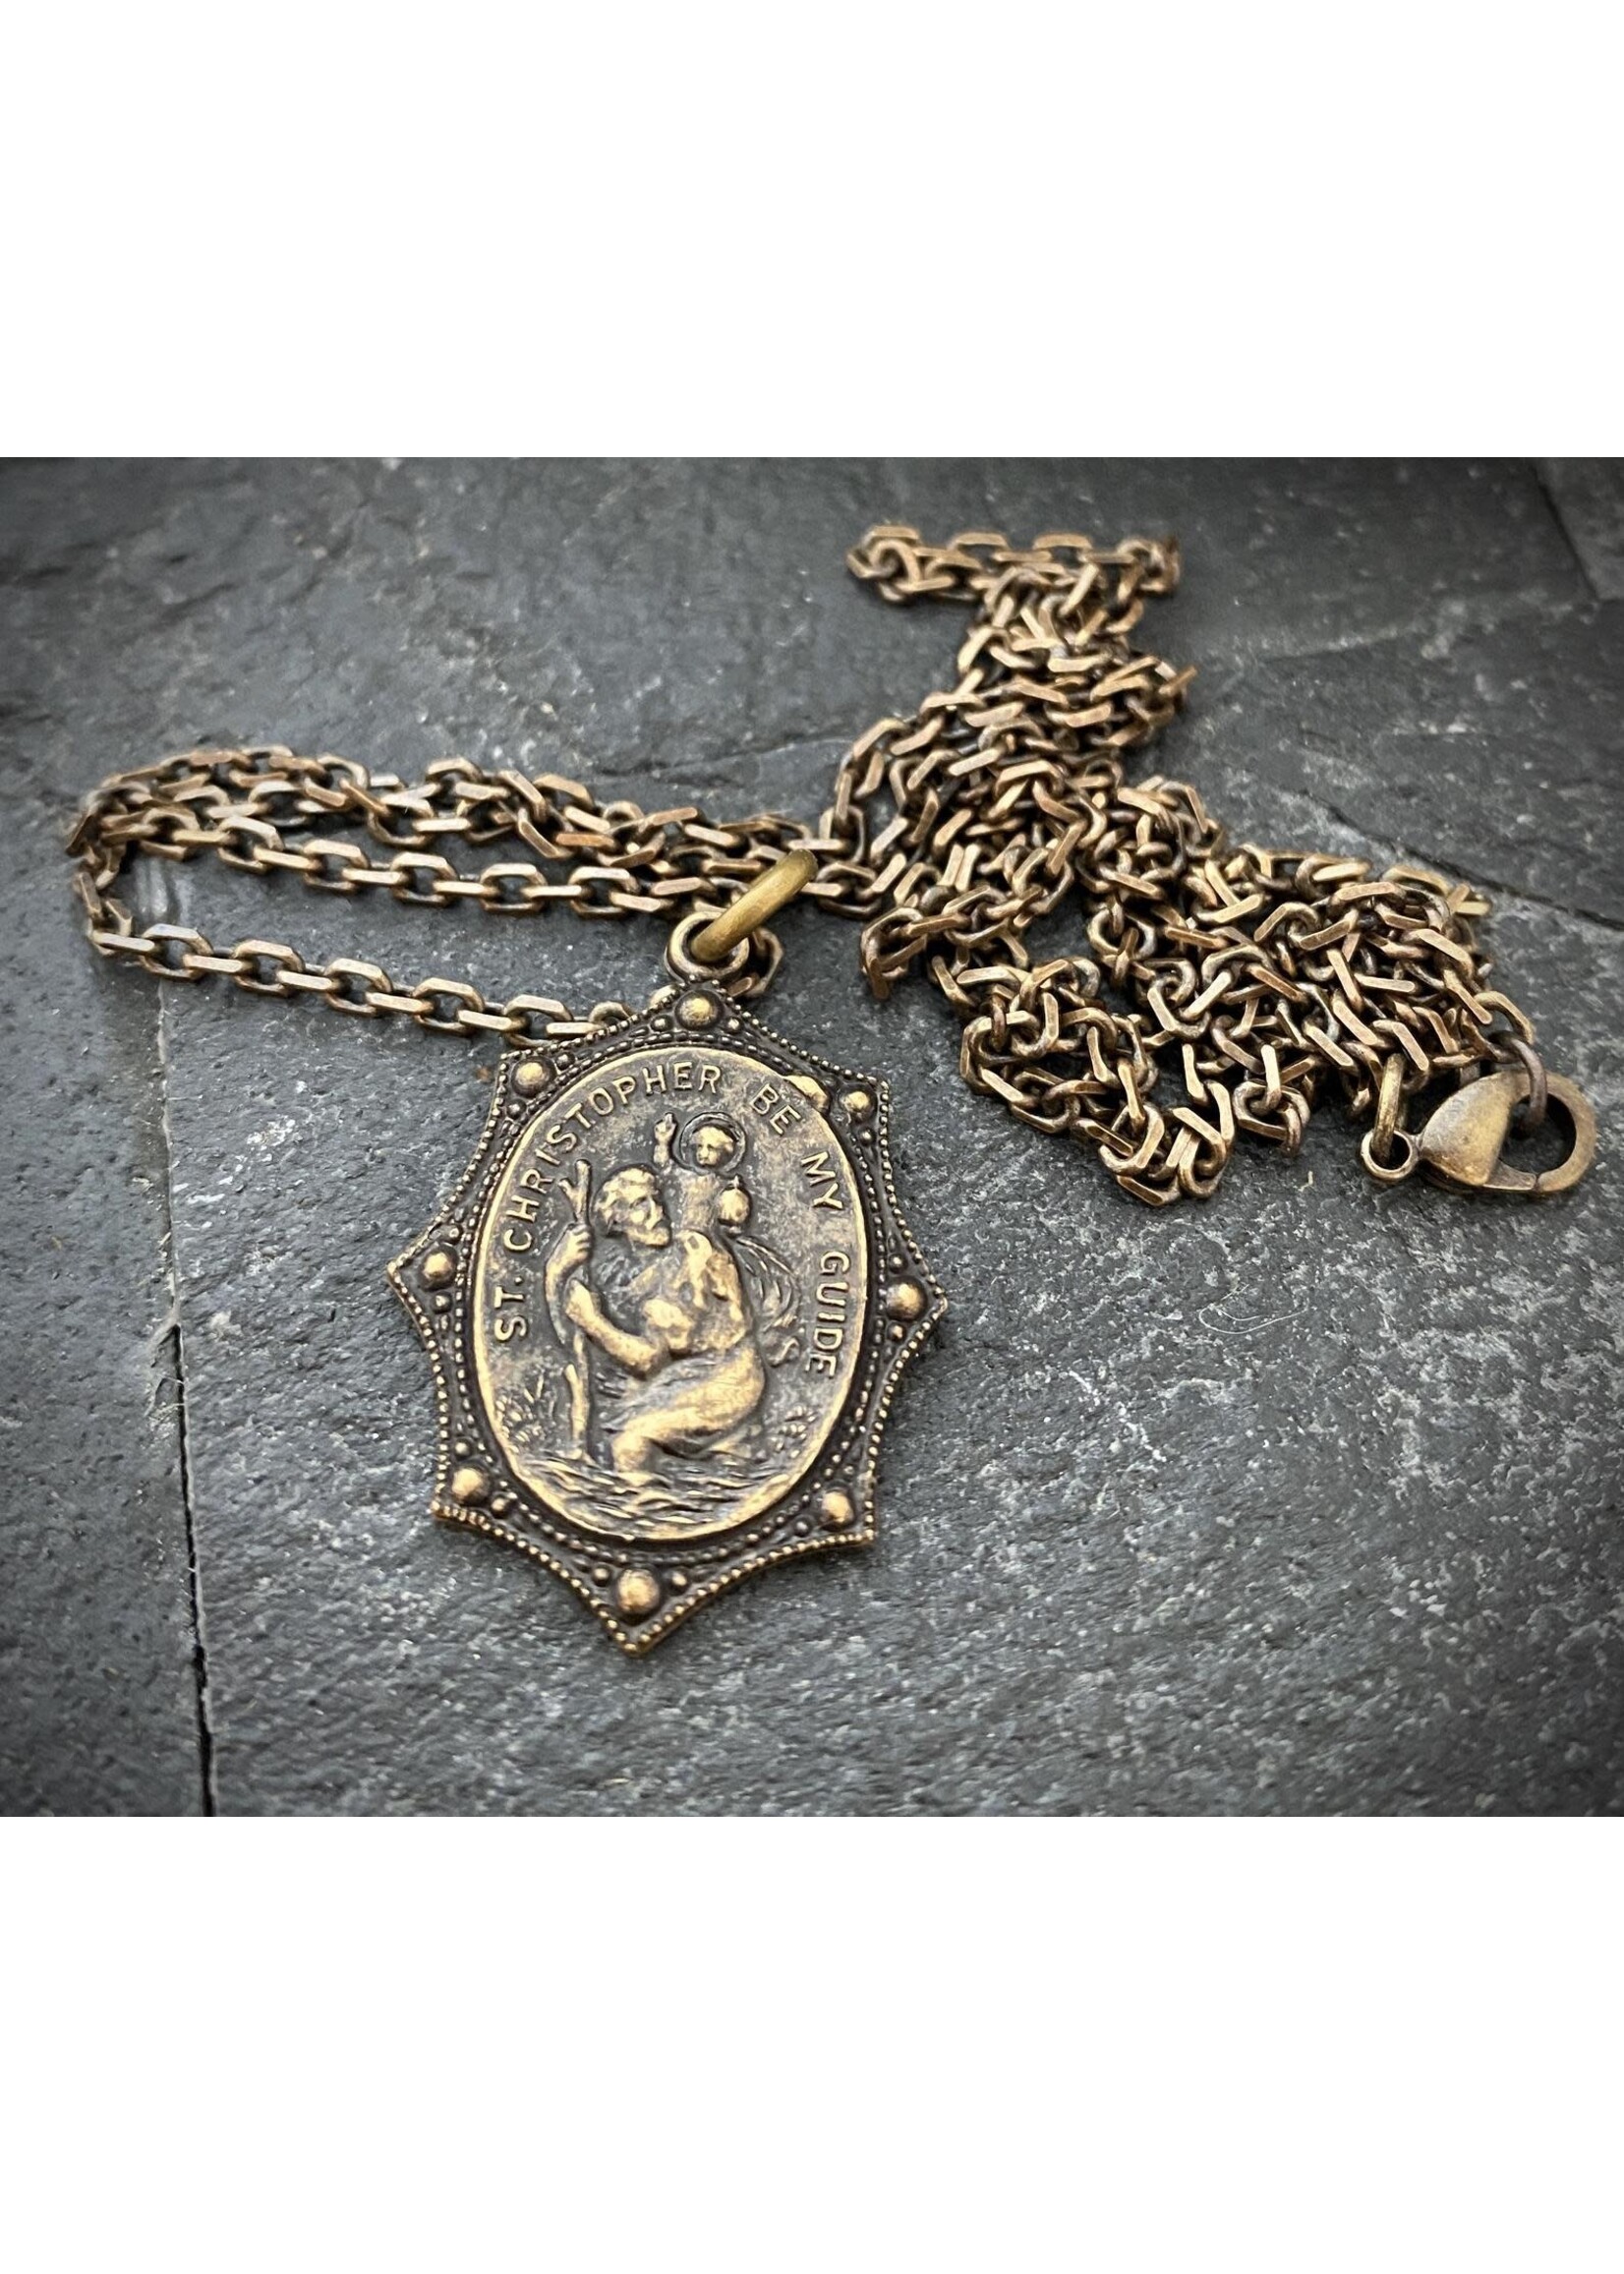 Product | Set & Stones Saint Christopher Necklace